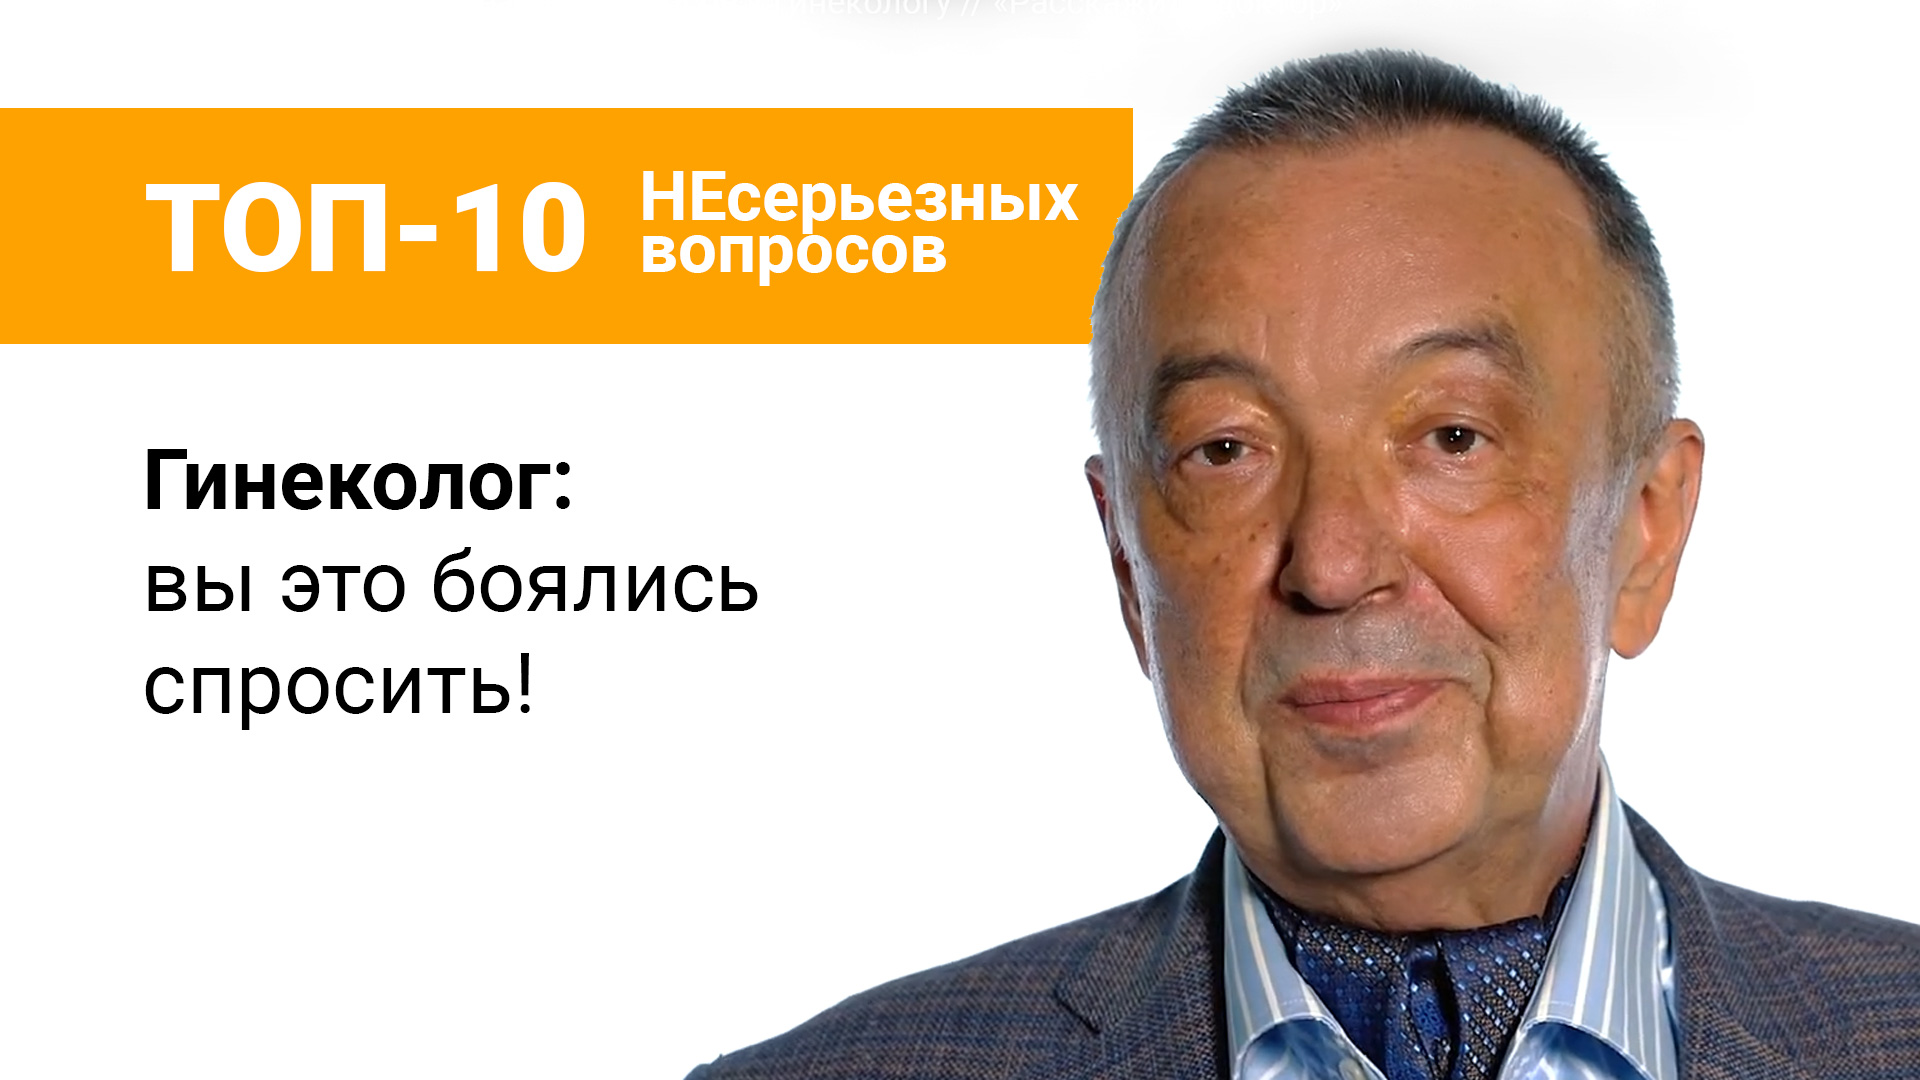 «Топ-10 несерьезных вопросов»: гинеколог Сергей Штыров